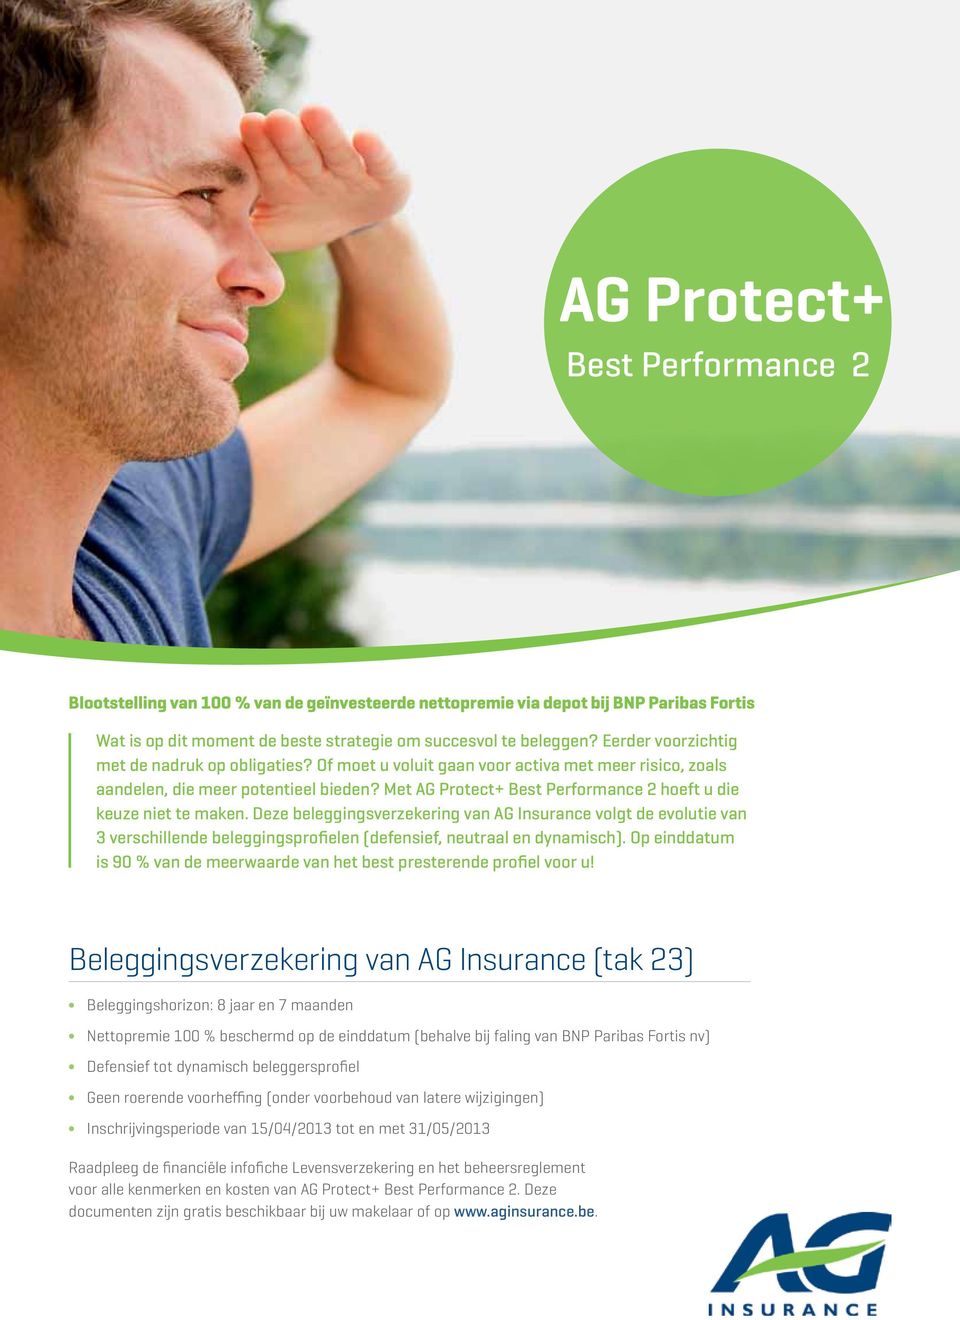 Met AG Protect+ Best Performance 2 hoeft u die keuze niet te maken.